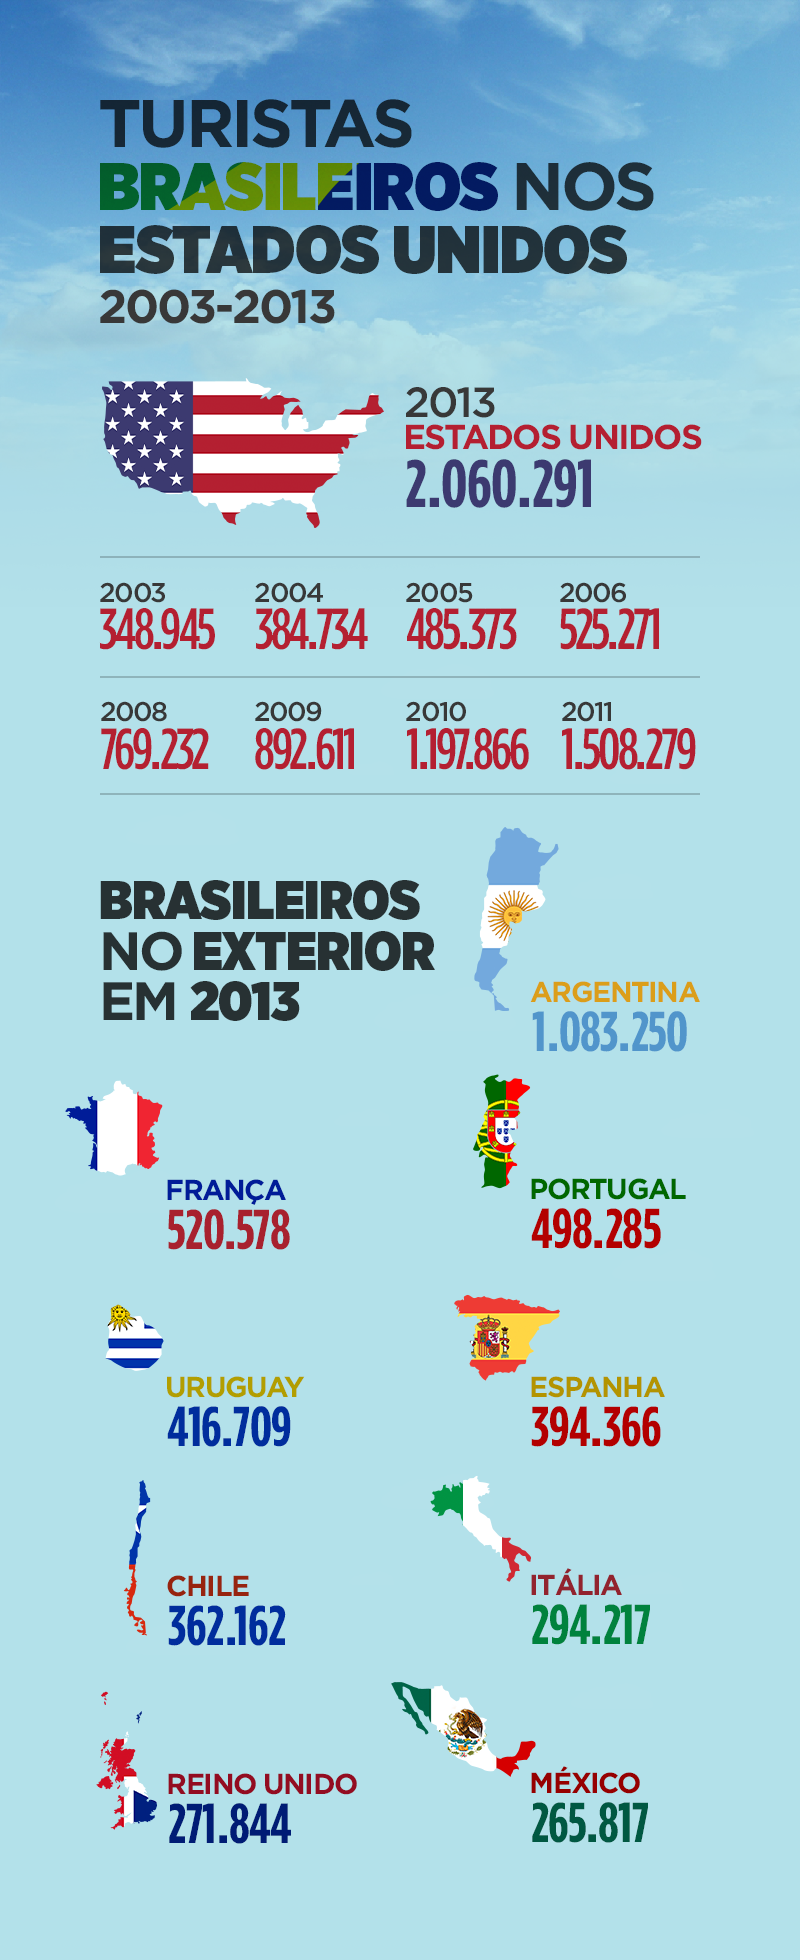 Turistas Brasileiros nos Estados Unidos